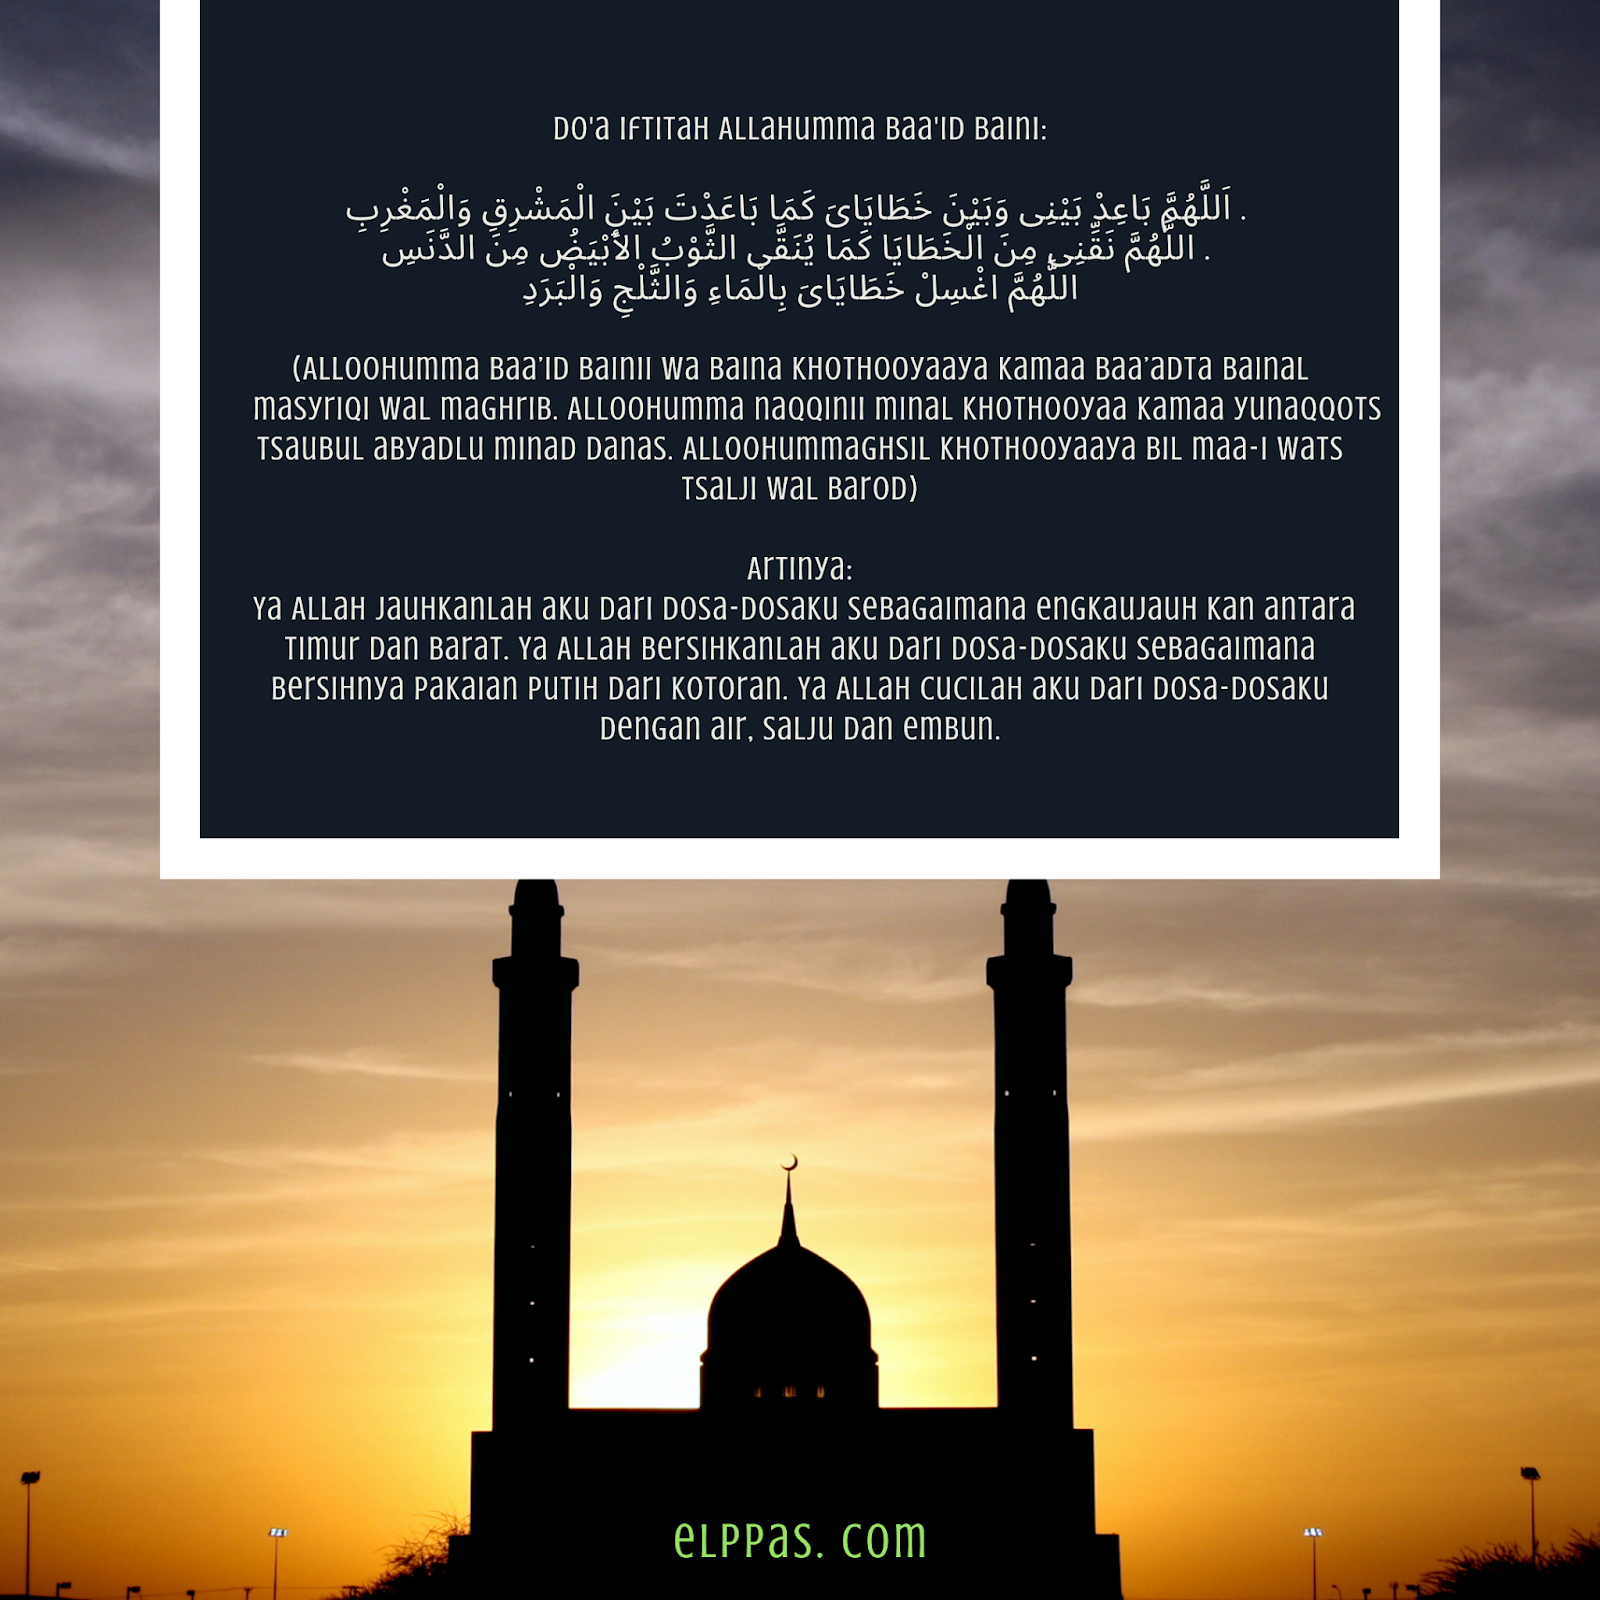 Bacaan Sholat Wajib Sunnat Yang Digunakan Di Persis Persatuan Islam Elppas Story